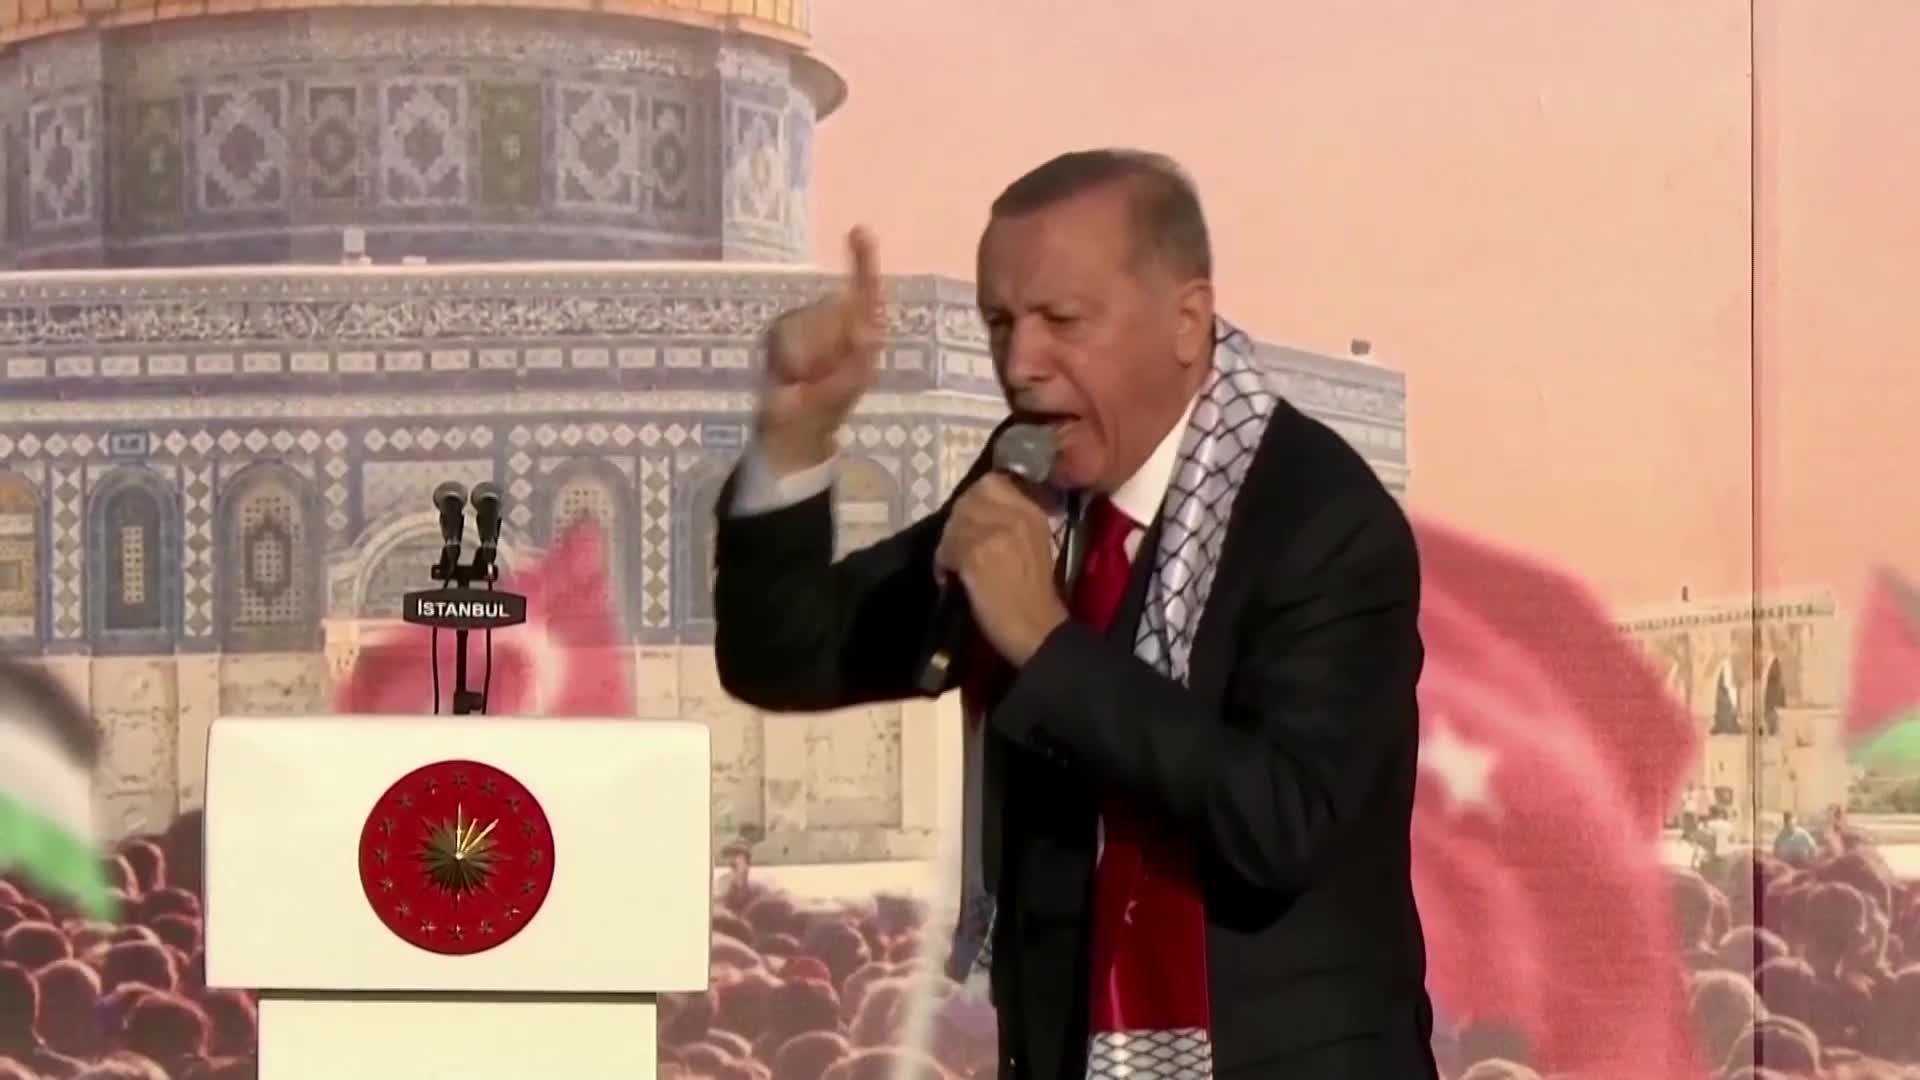 "Отписахме го": Ердоган прекъсна контактите си с израелския премиер